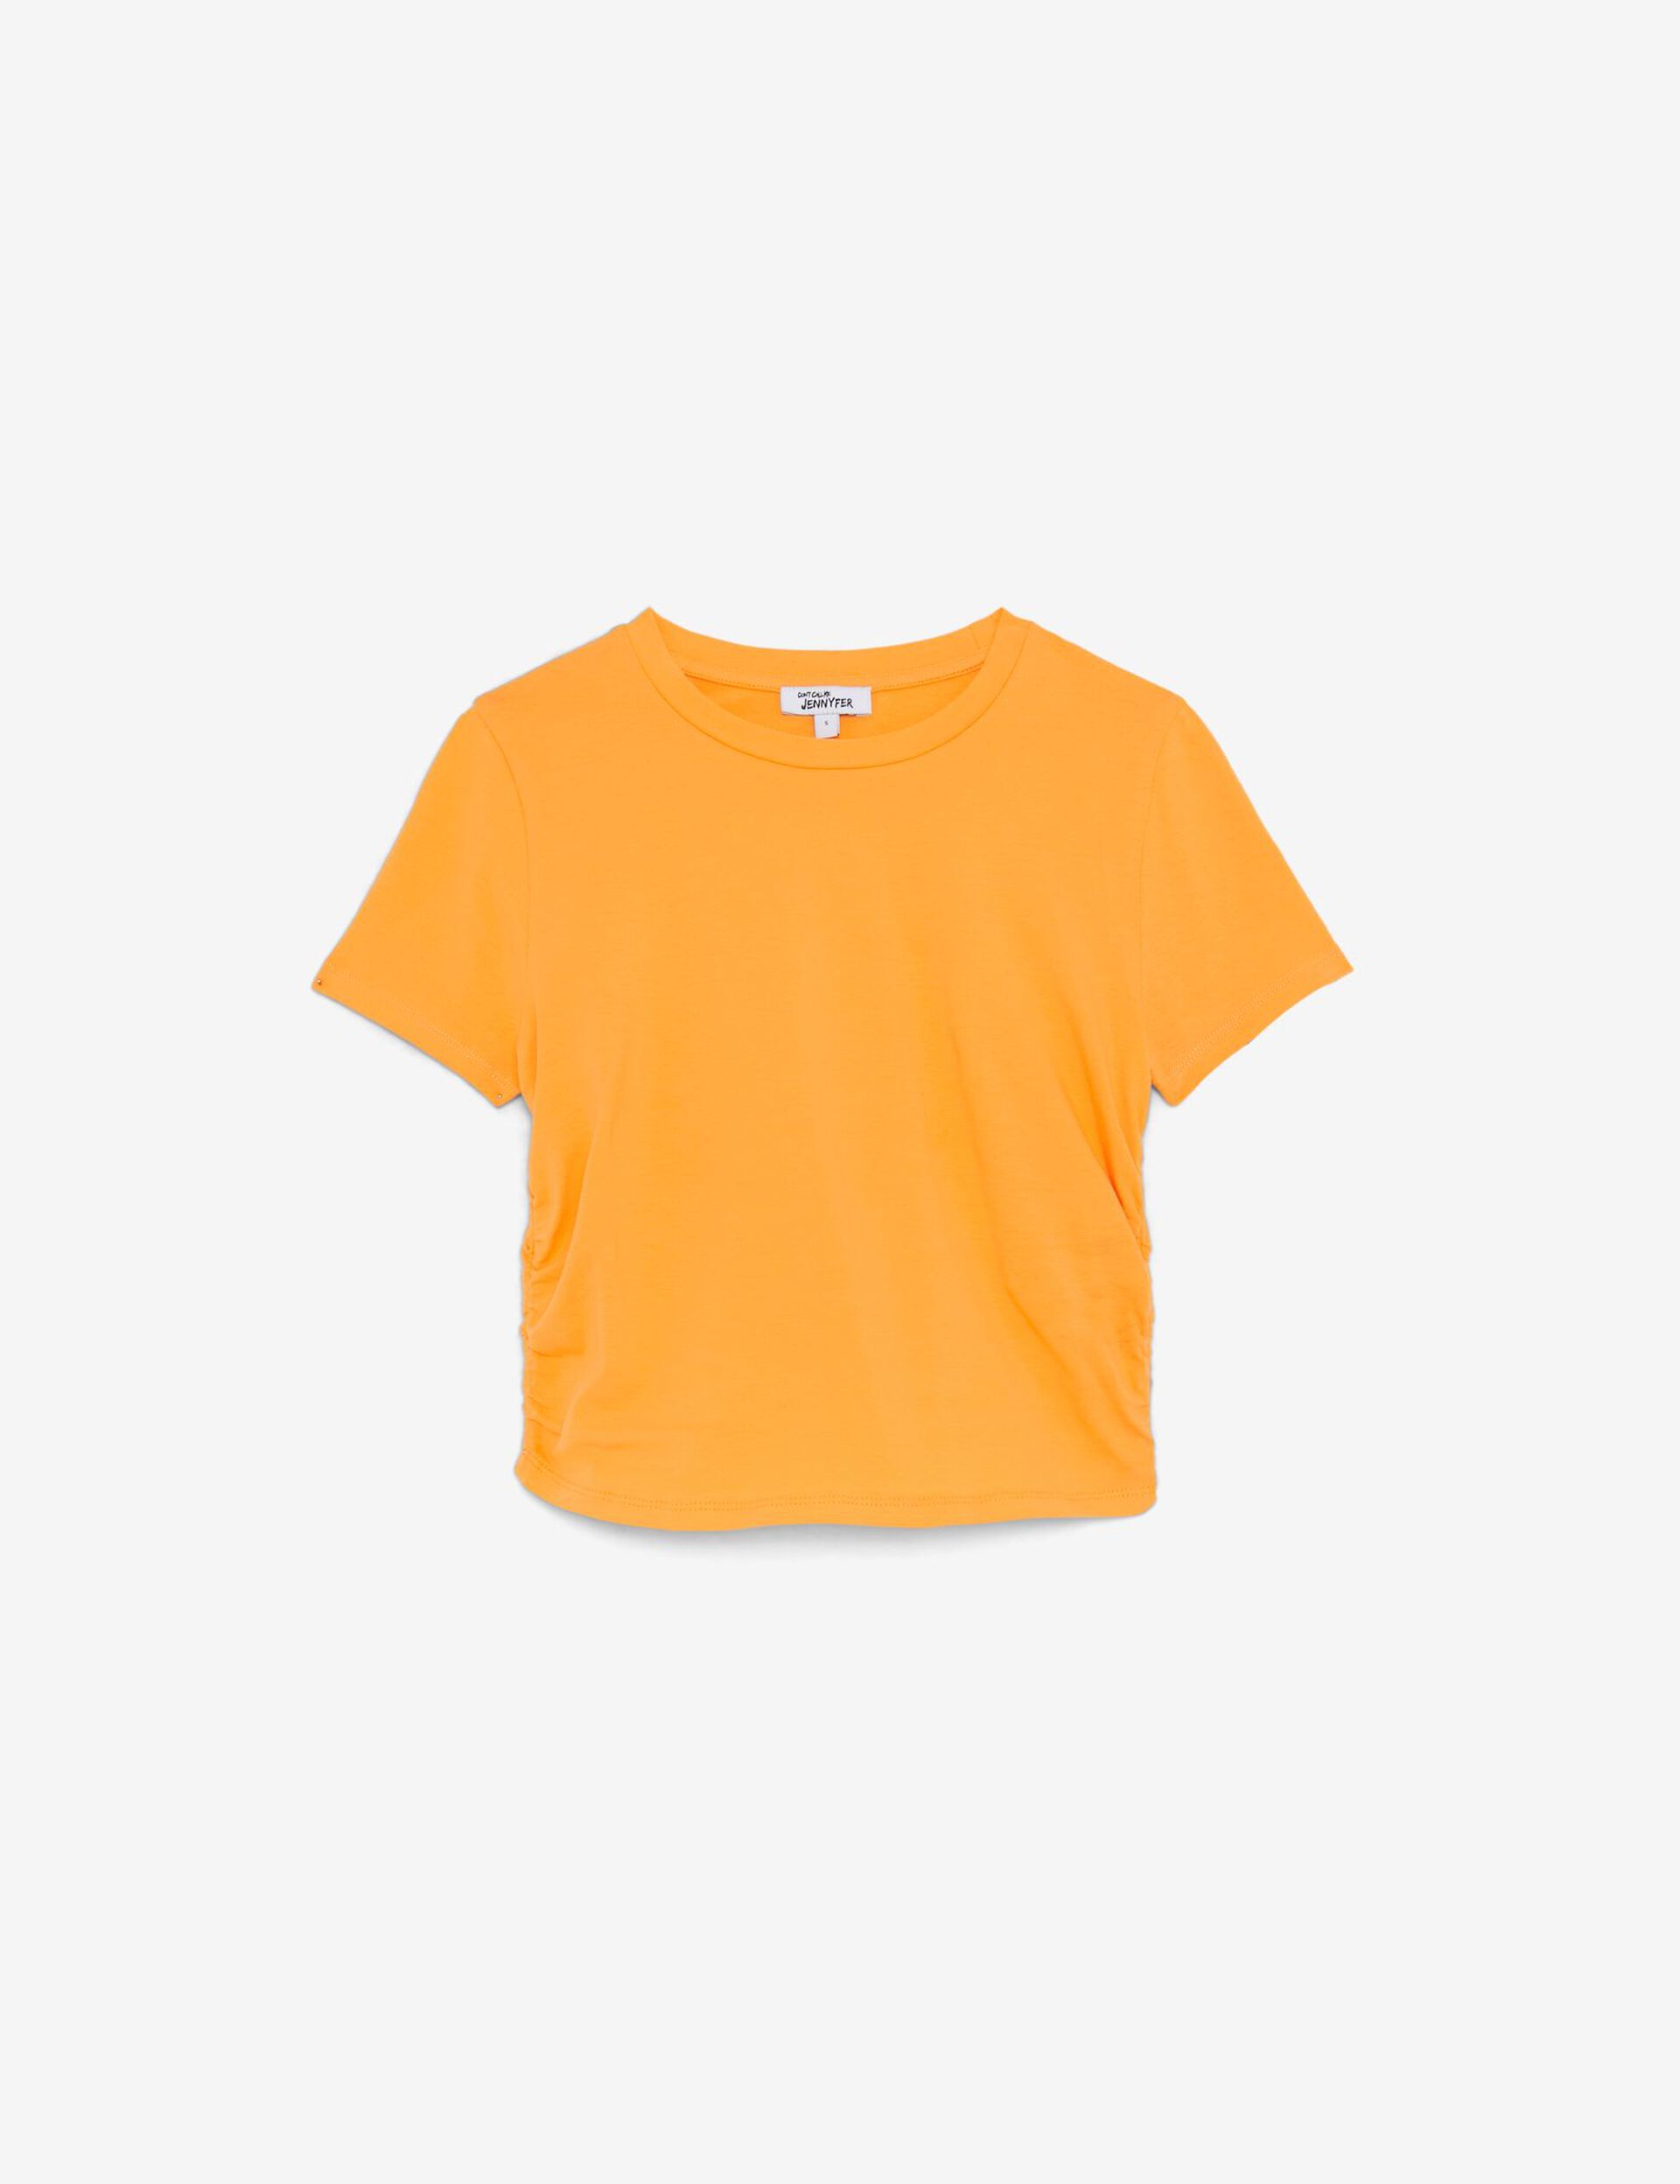 Top tee-shirt orange fronces sur les côtés